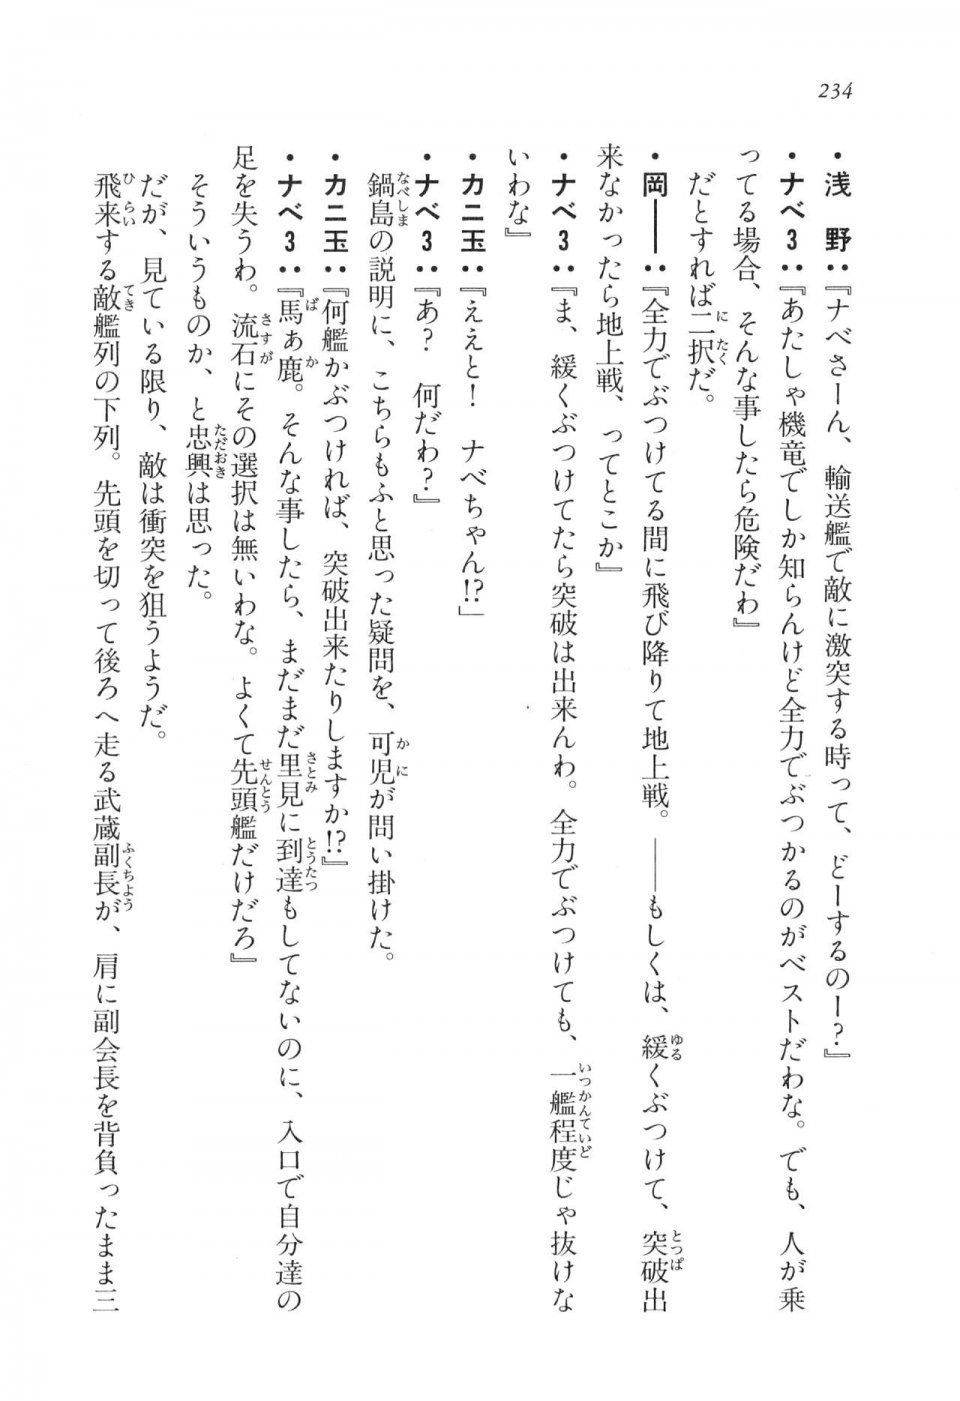 Kyoukai Senjou no Horizon LN Vol 17(7B) - Photo #234